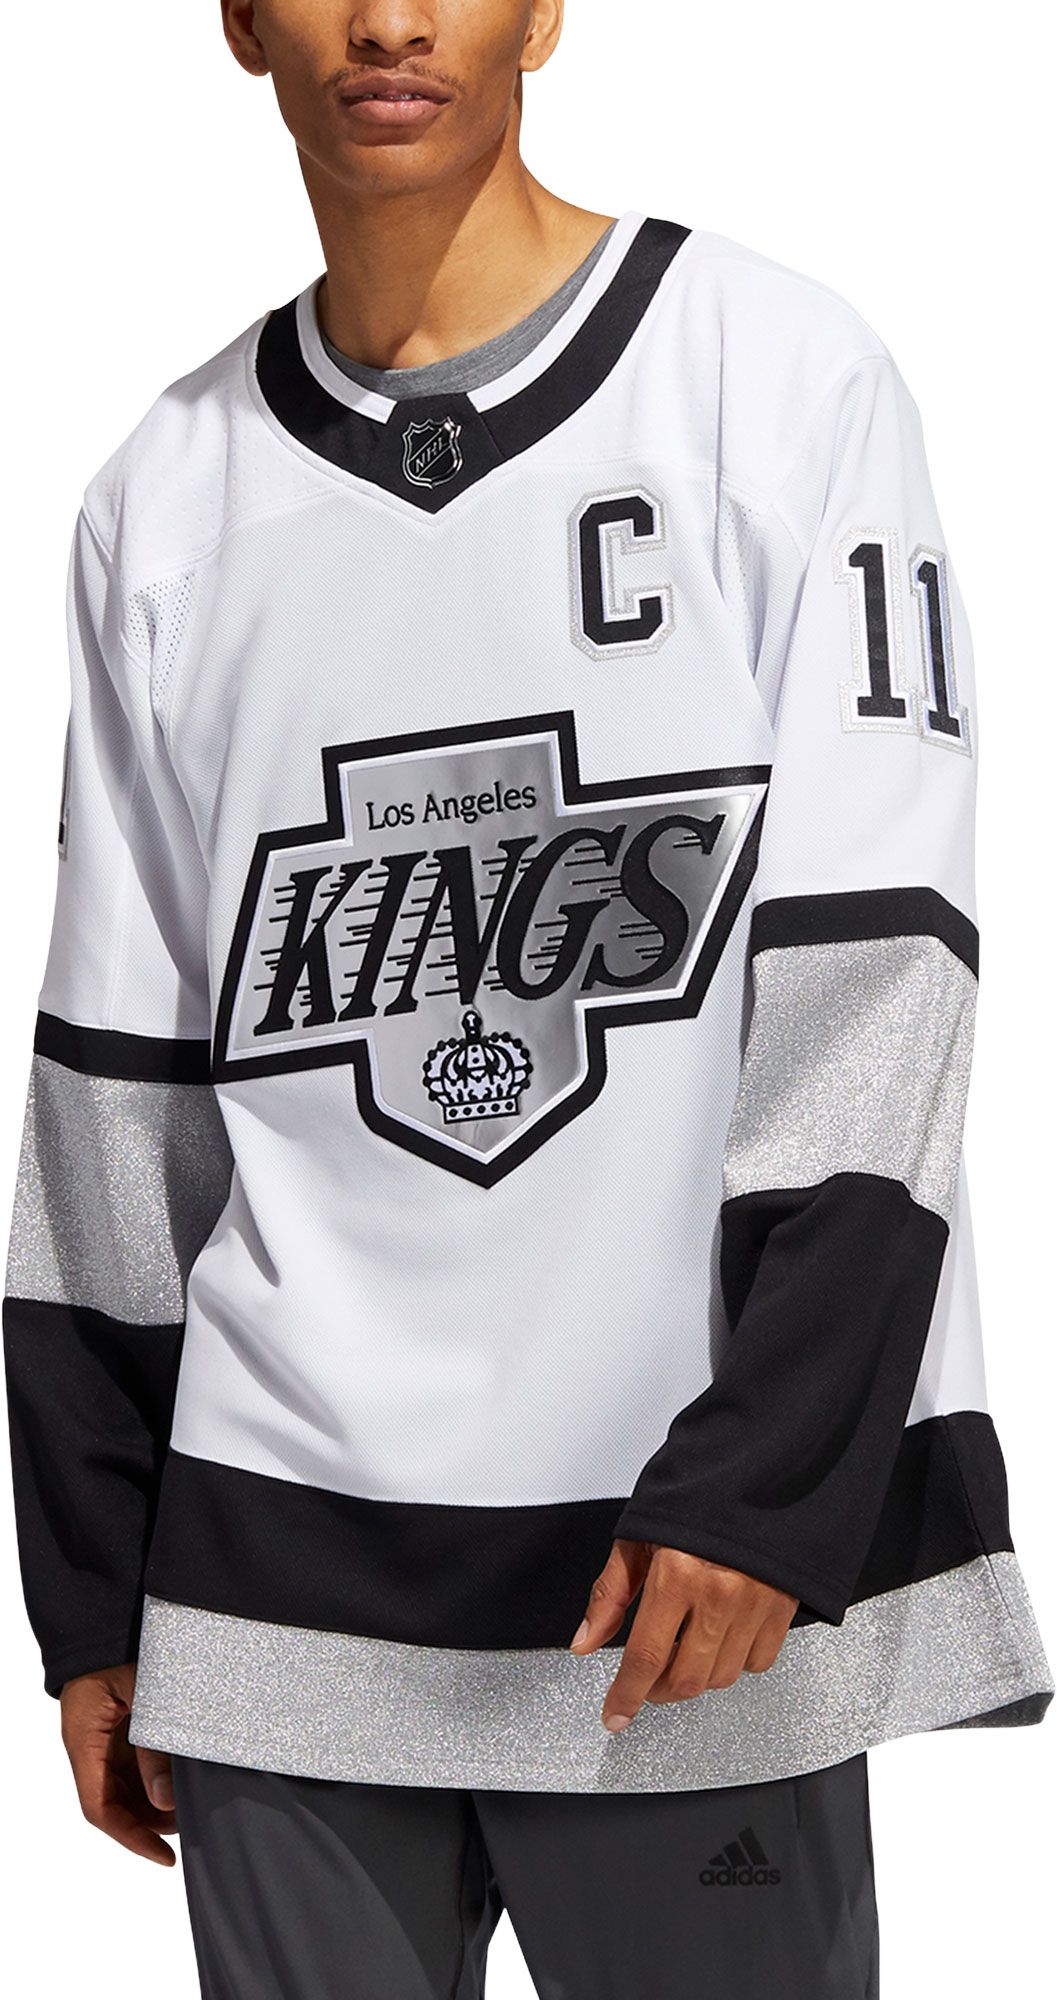 Los Angeles Kings logo jersey